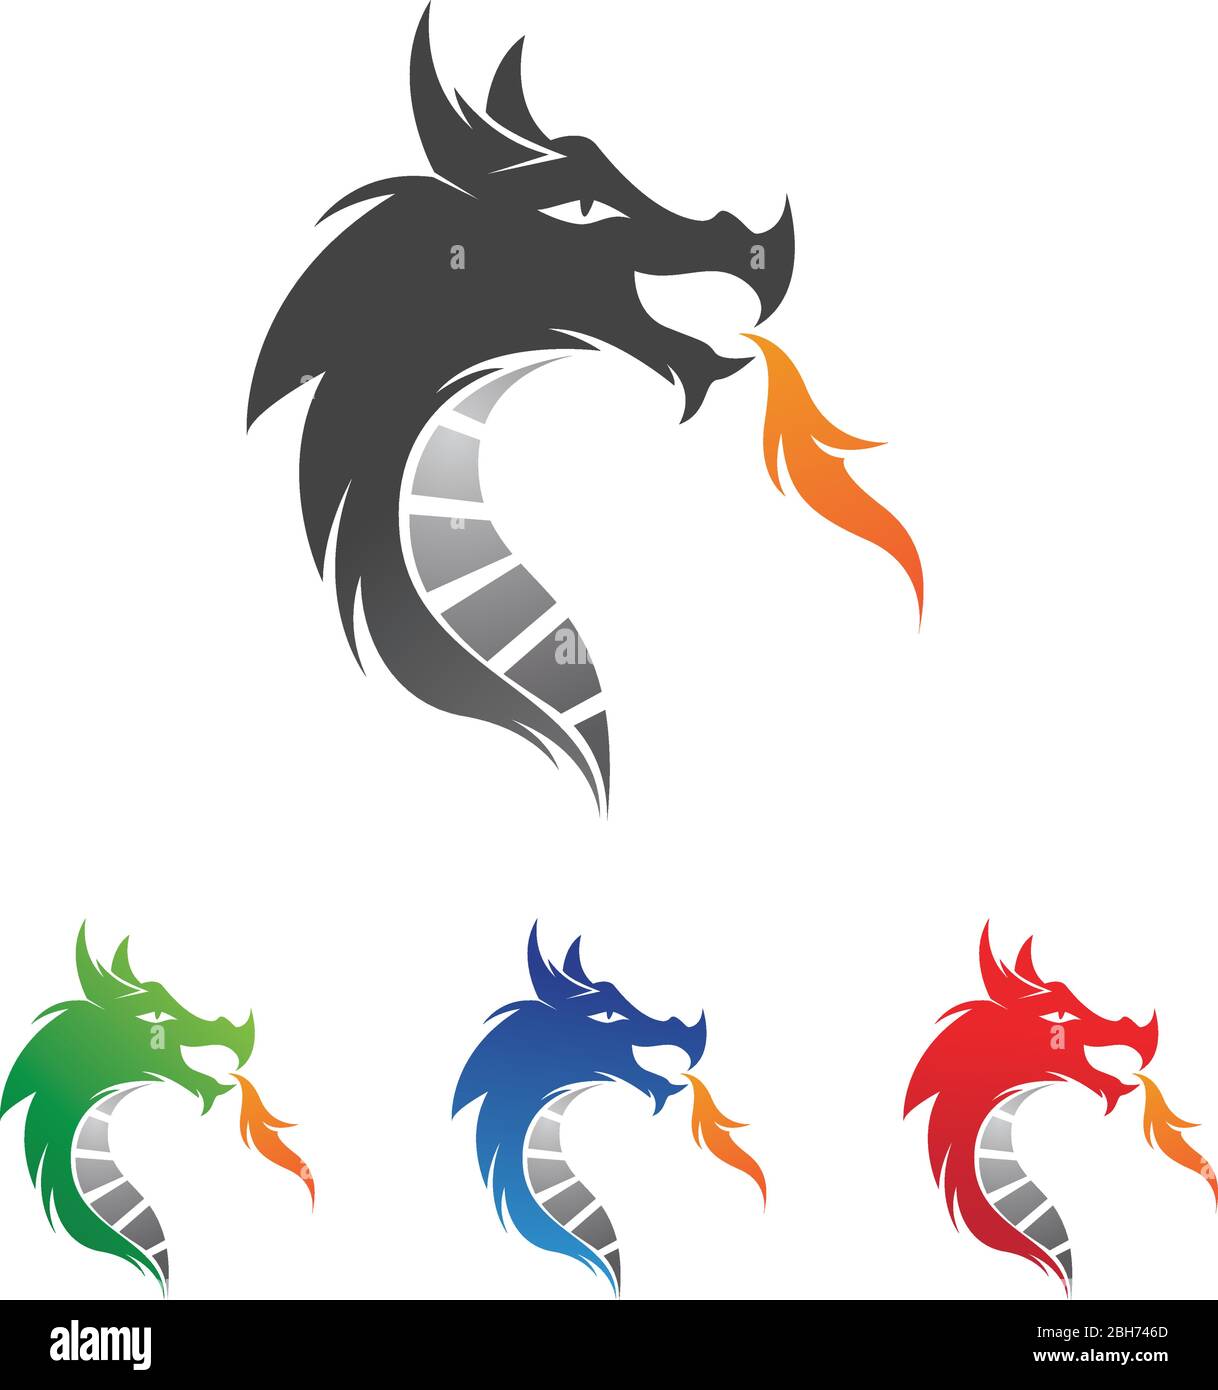 Dragon head vector image logo Stock Vector